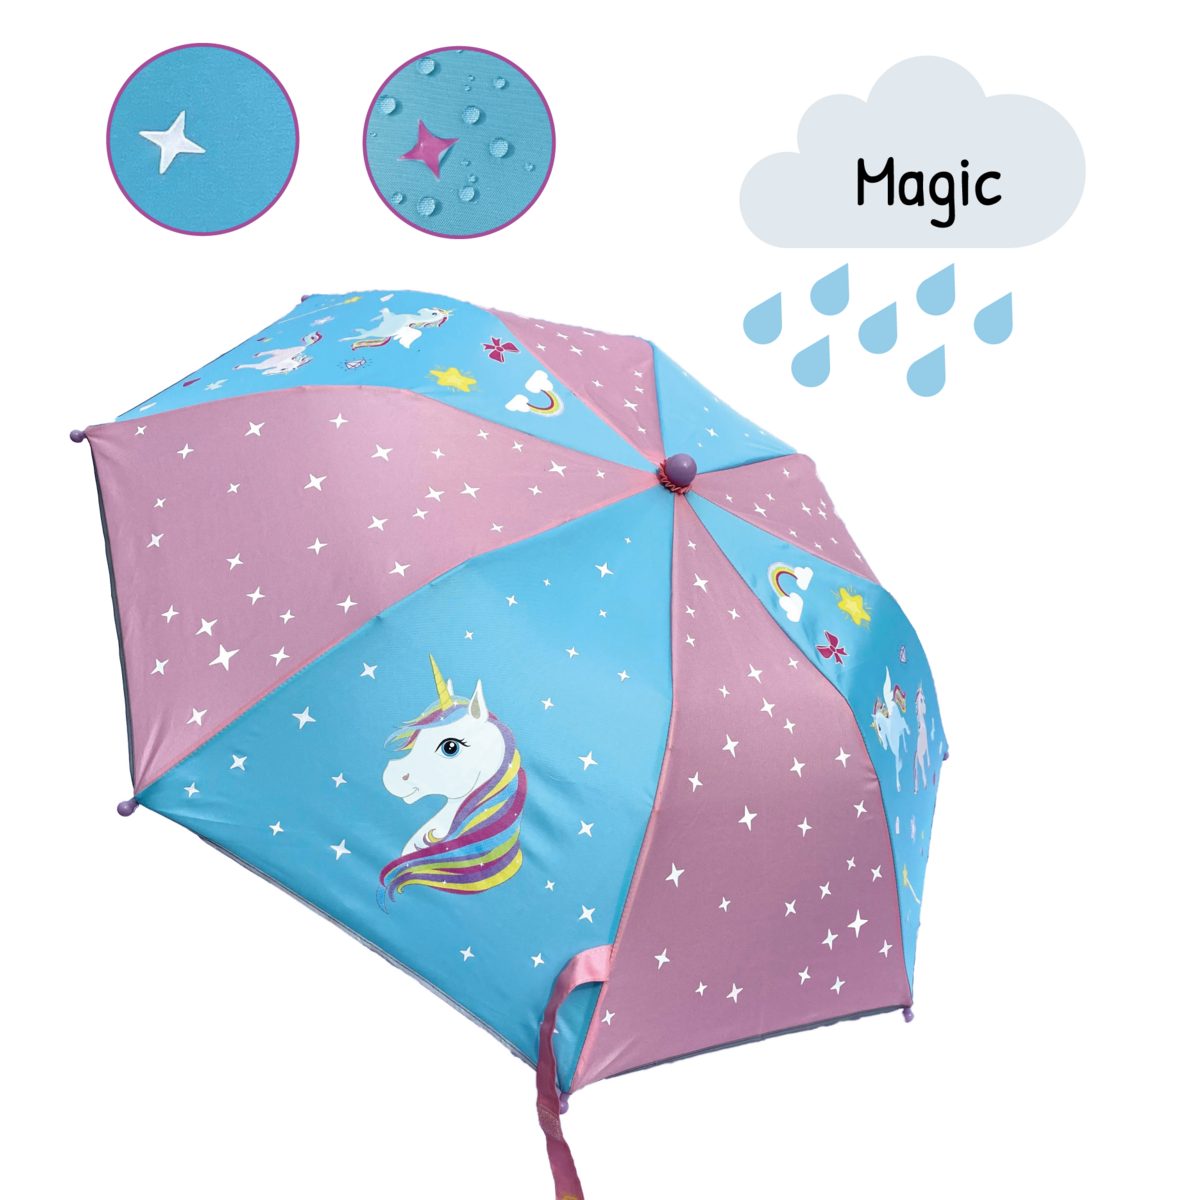 Kinder Einhorn, Regenschirm wechselt HECKBO Regen Magic - Taschenregenschirm die Farbe bei